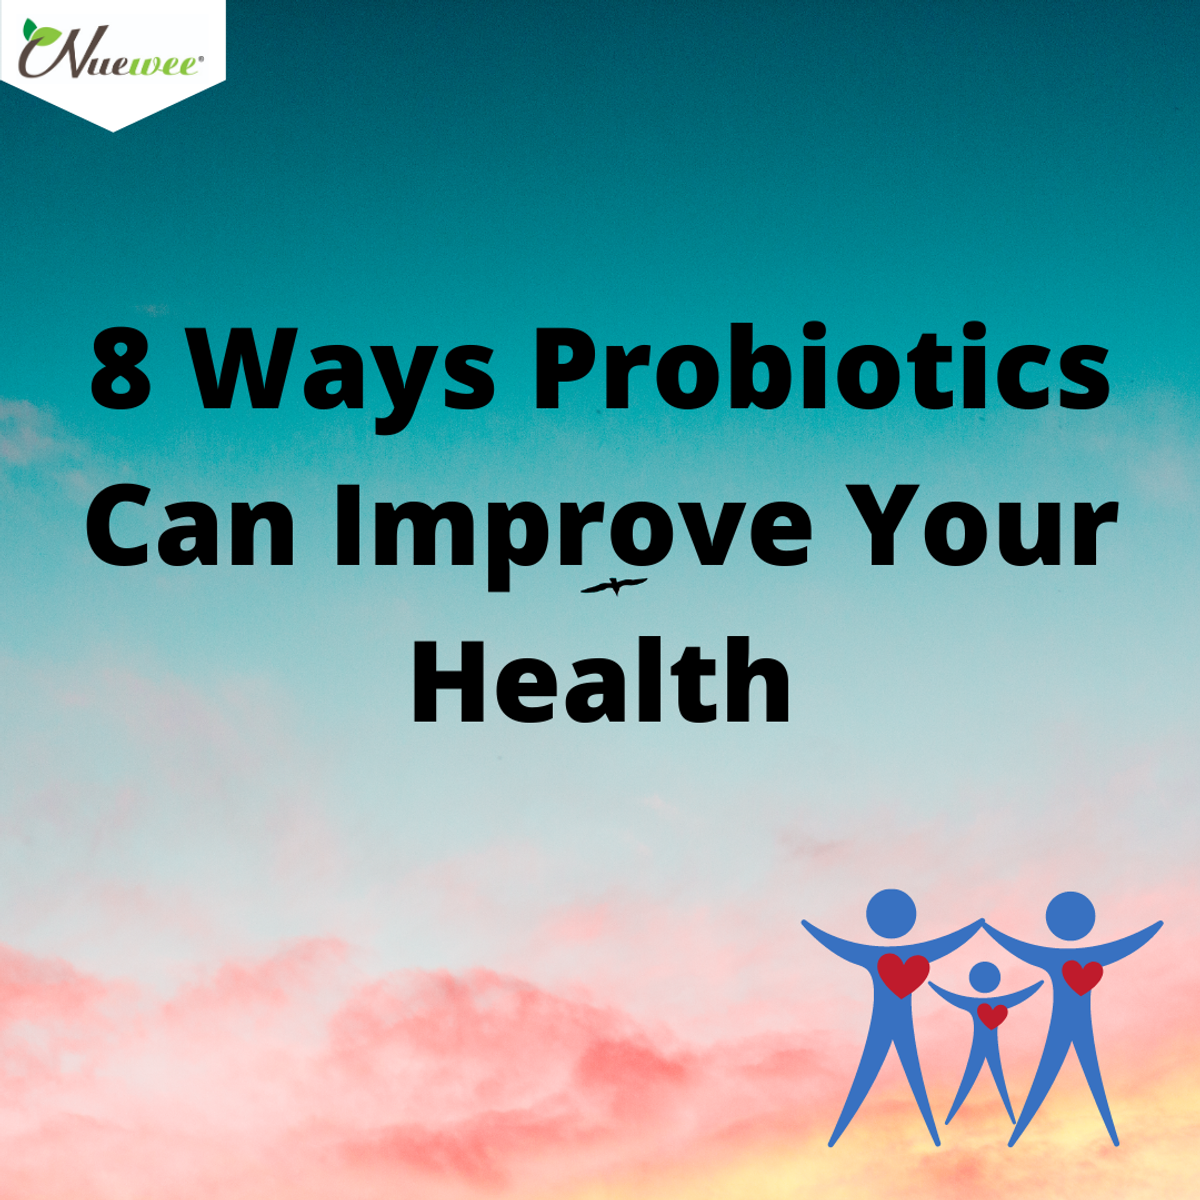 8 Ways Probiotics Can Improve Your Health